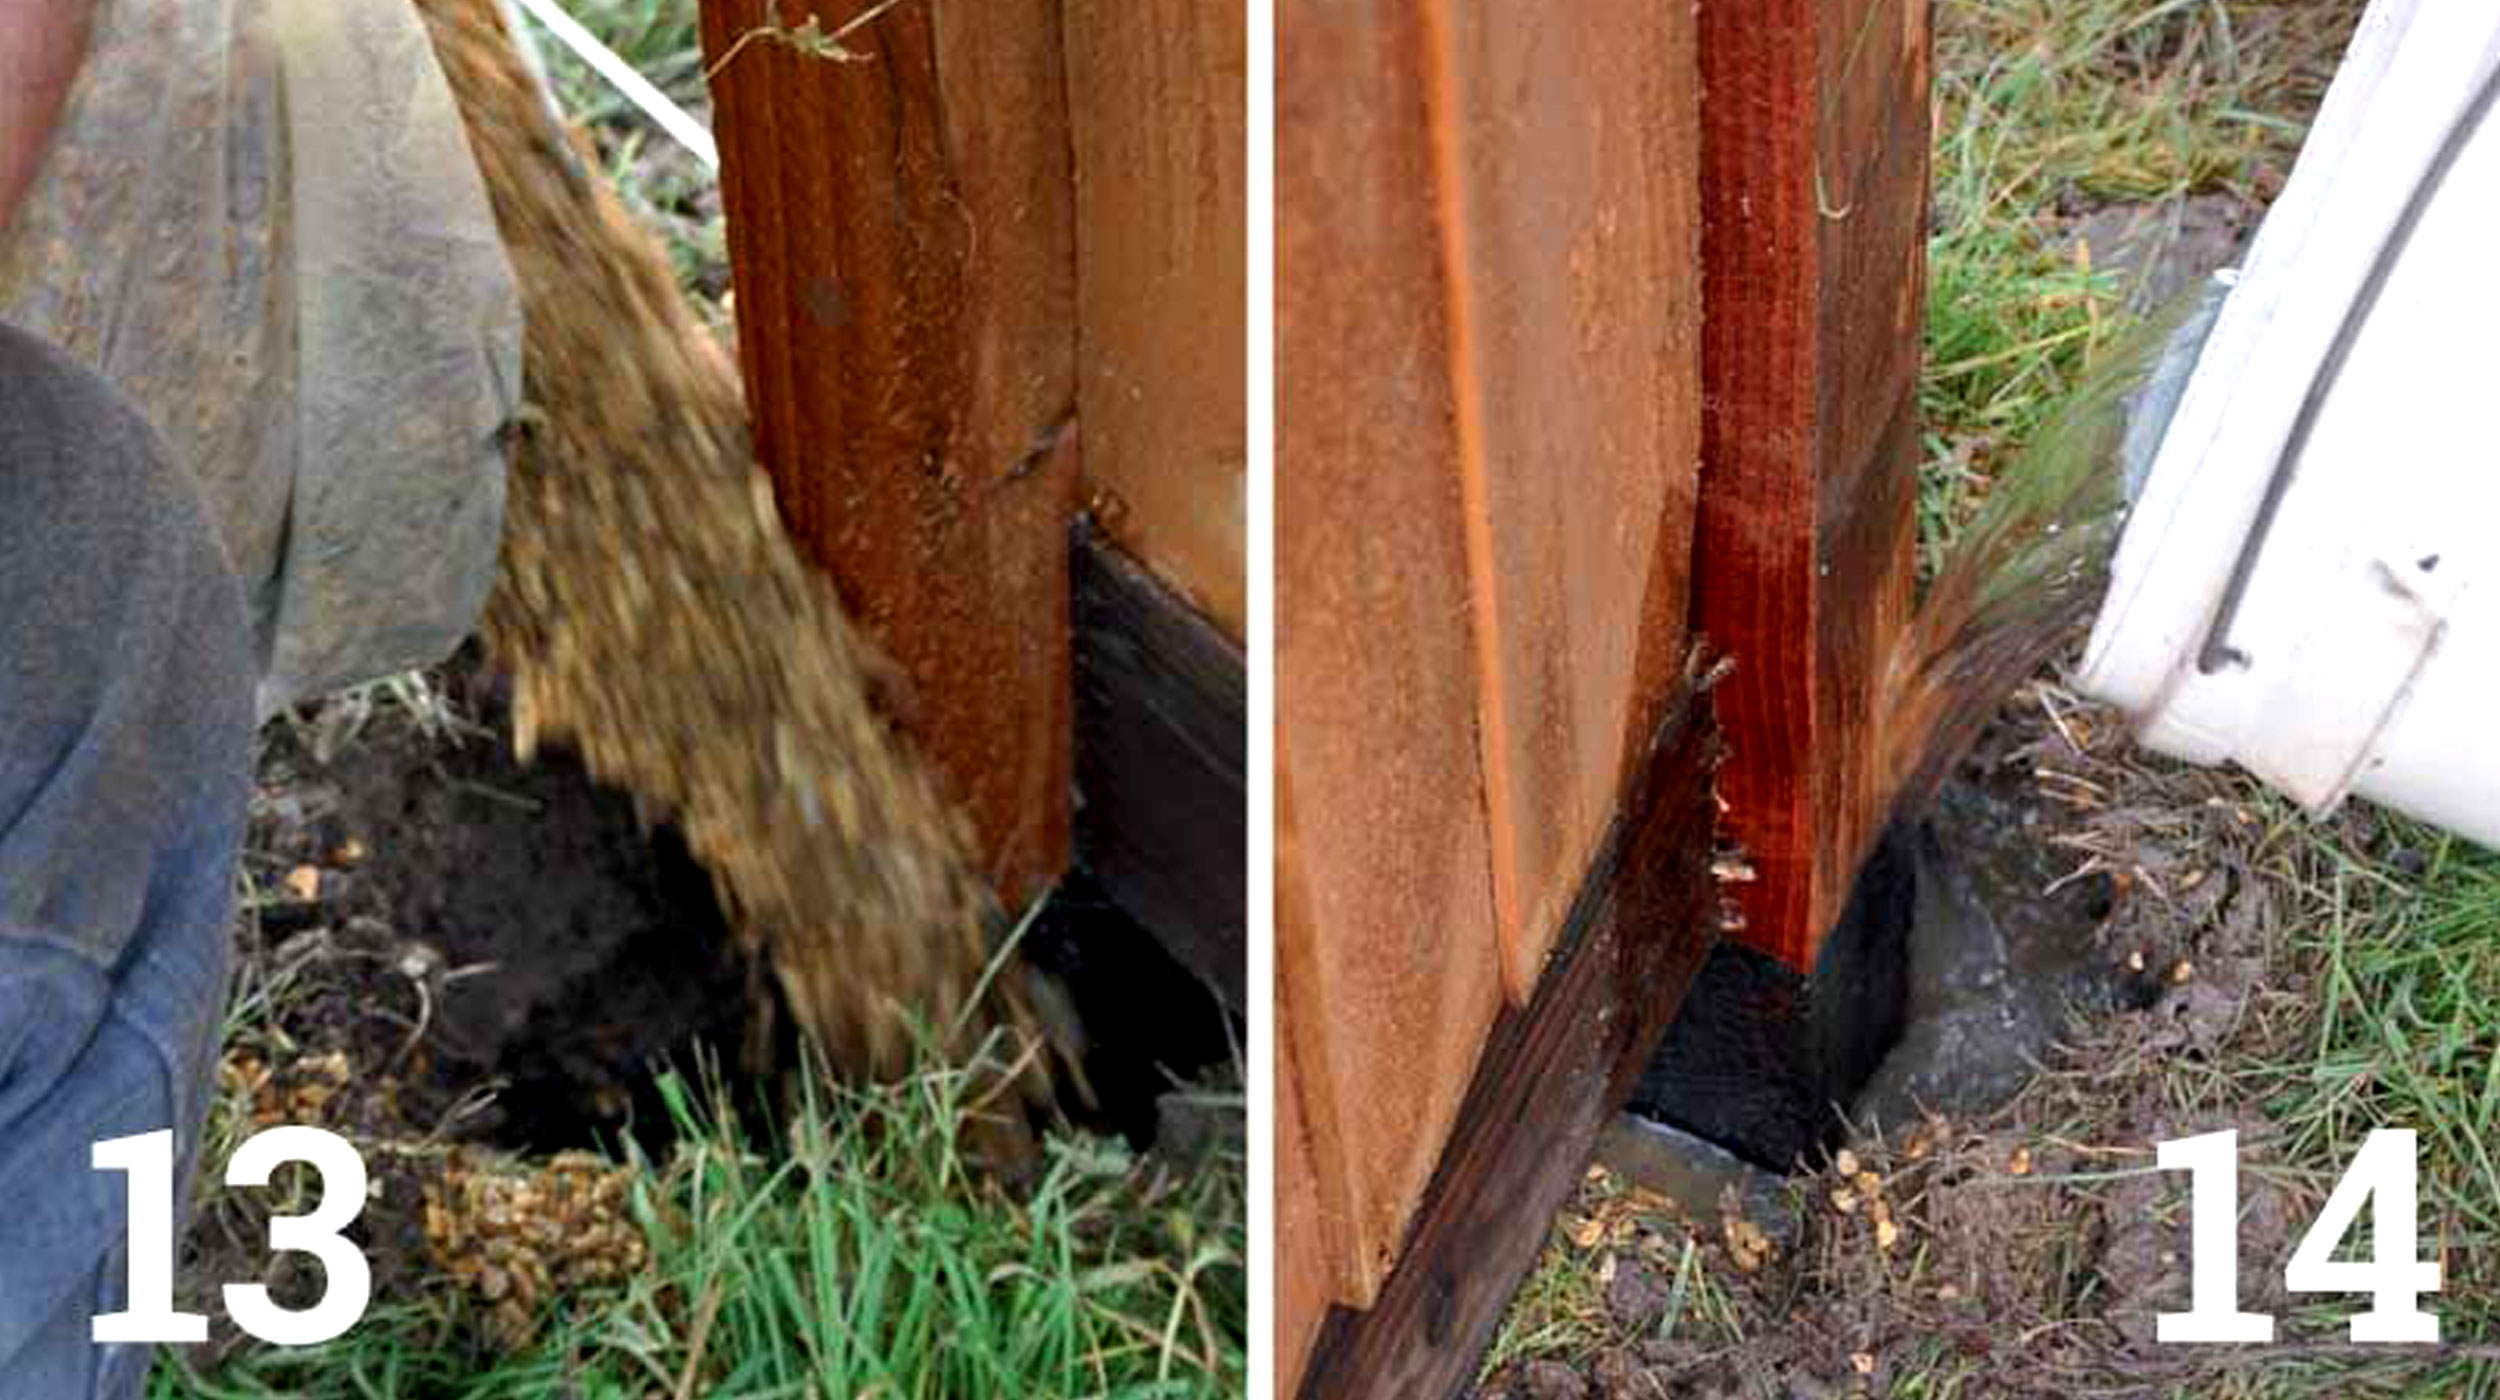 Bilder nebeneinander.  Links: Schütten von Kies in den Zaunpfosten.  Rechts: Zugabe von Wasser zum Zement im Zaunpfostenloch